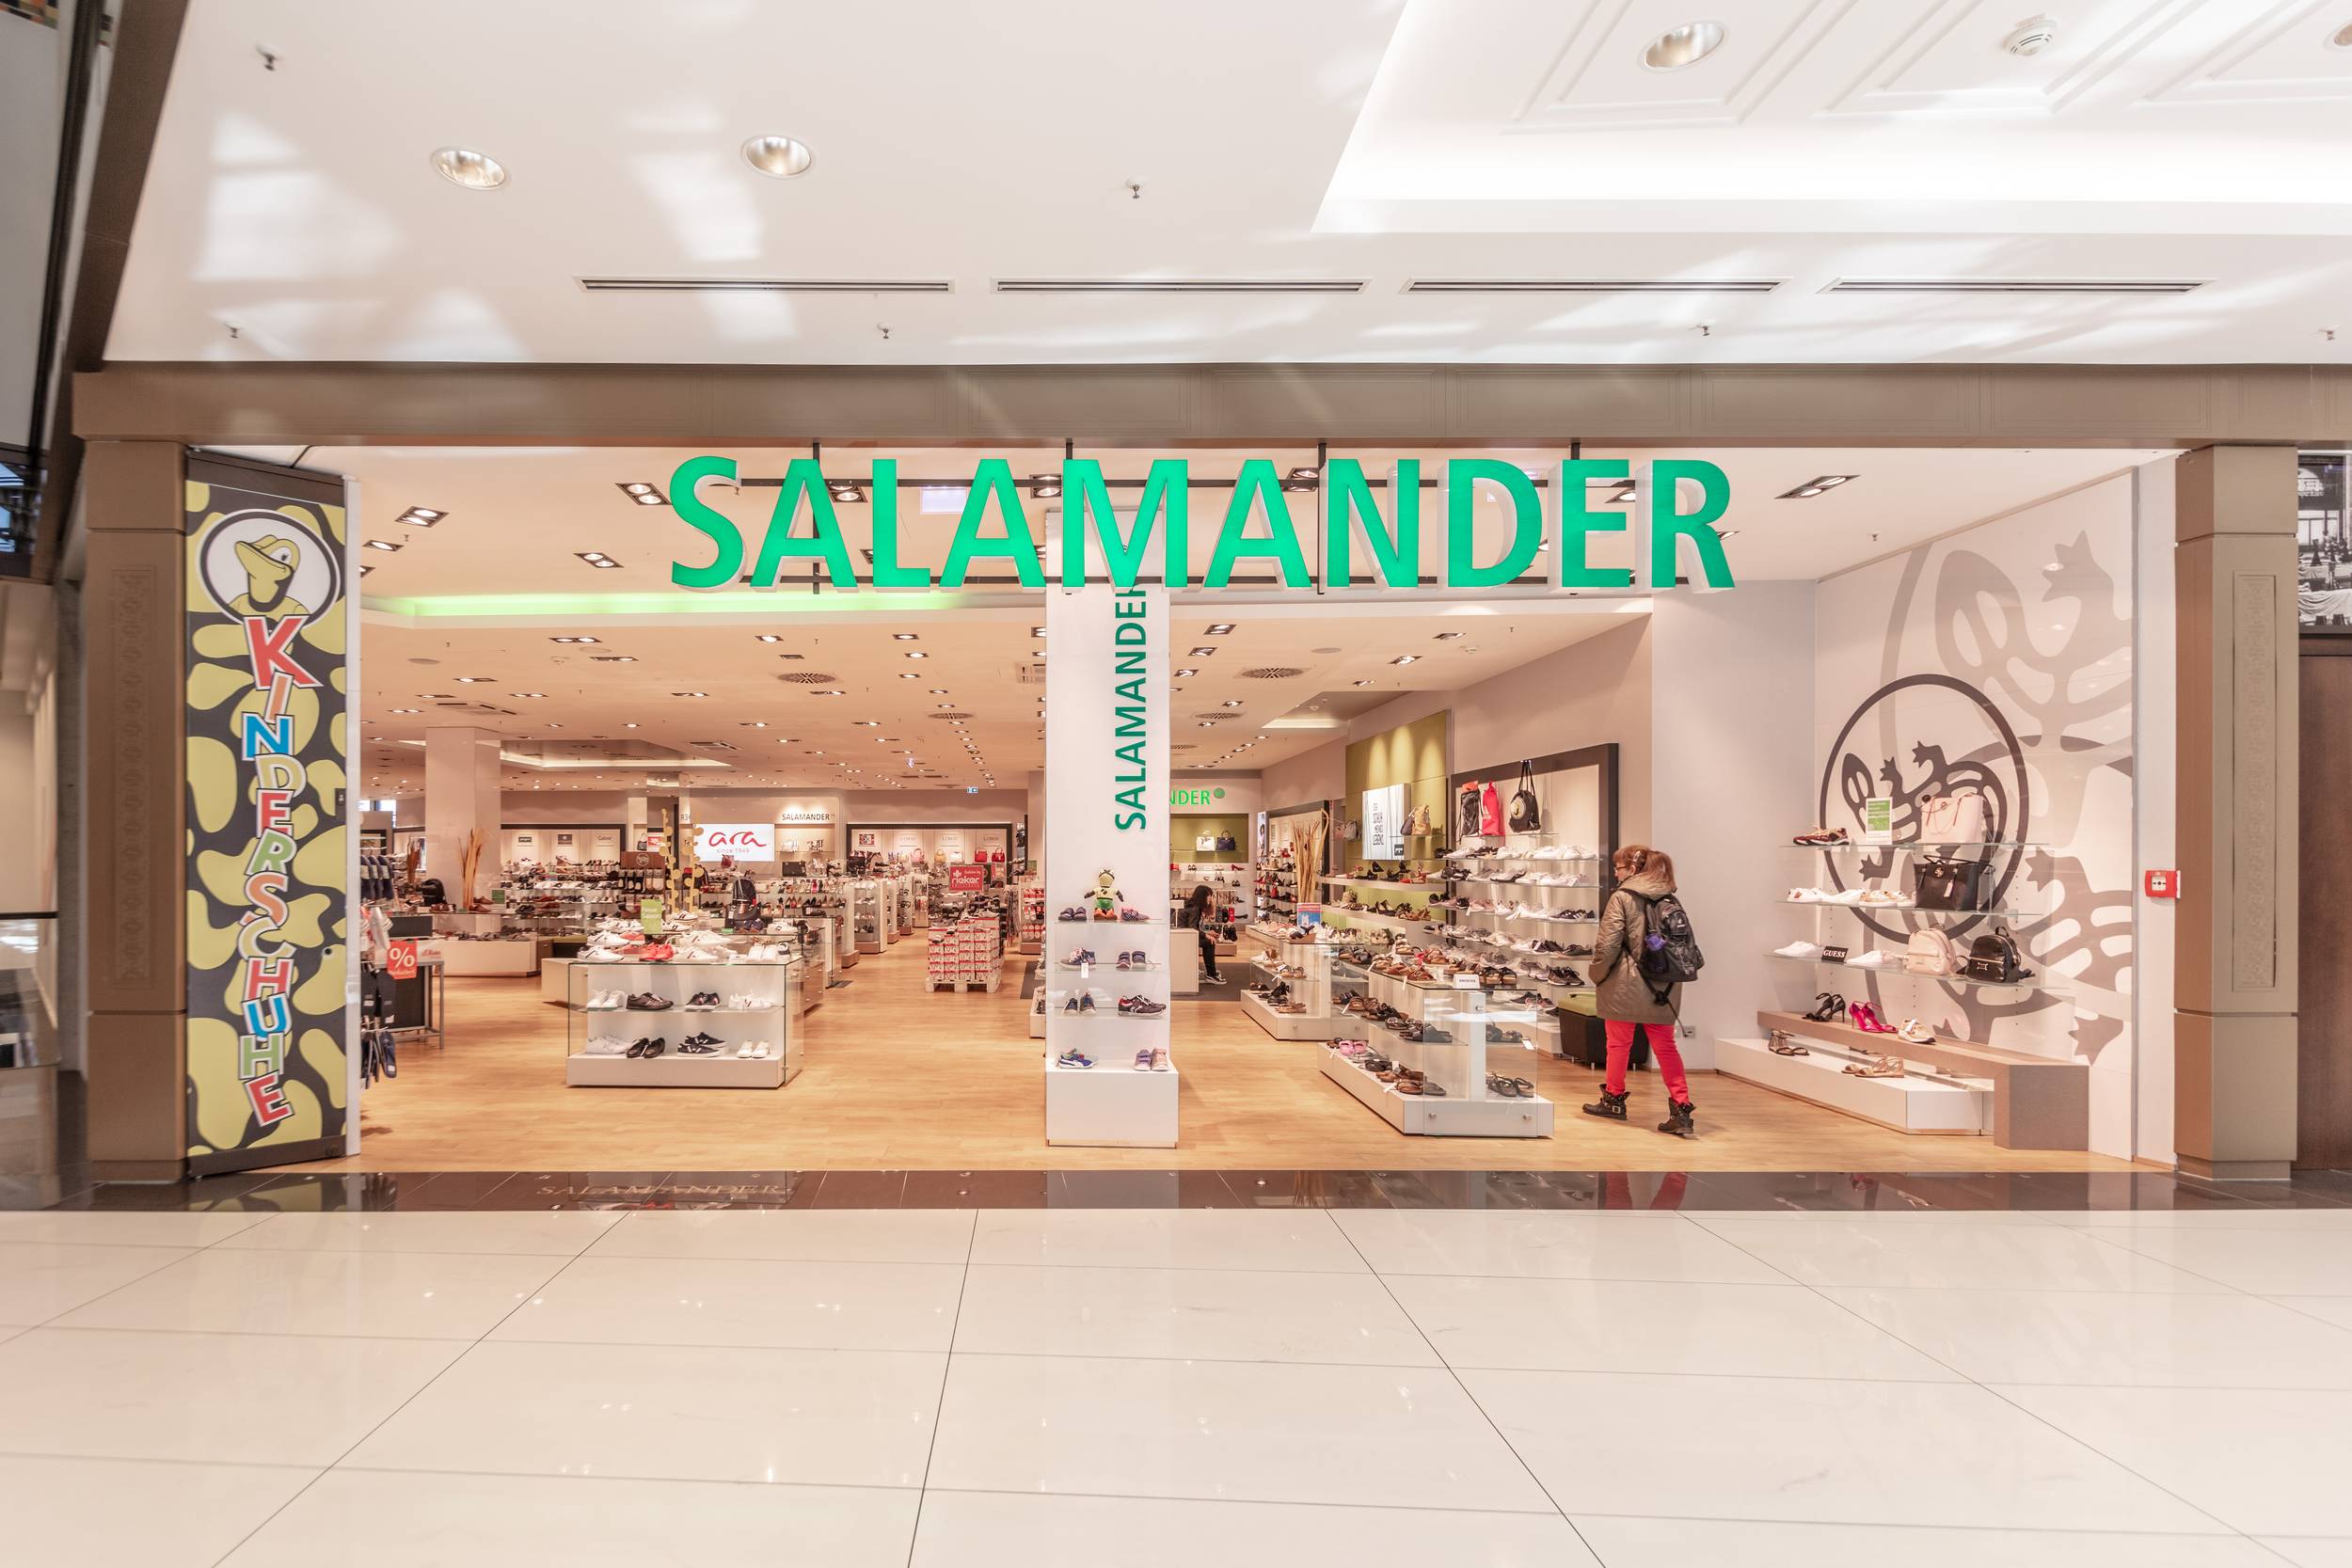 Salamander at the Mall of Berlin